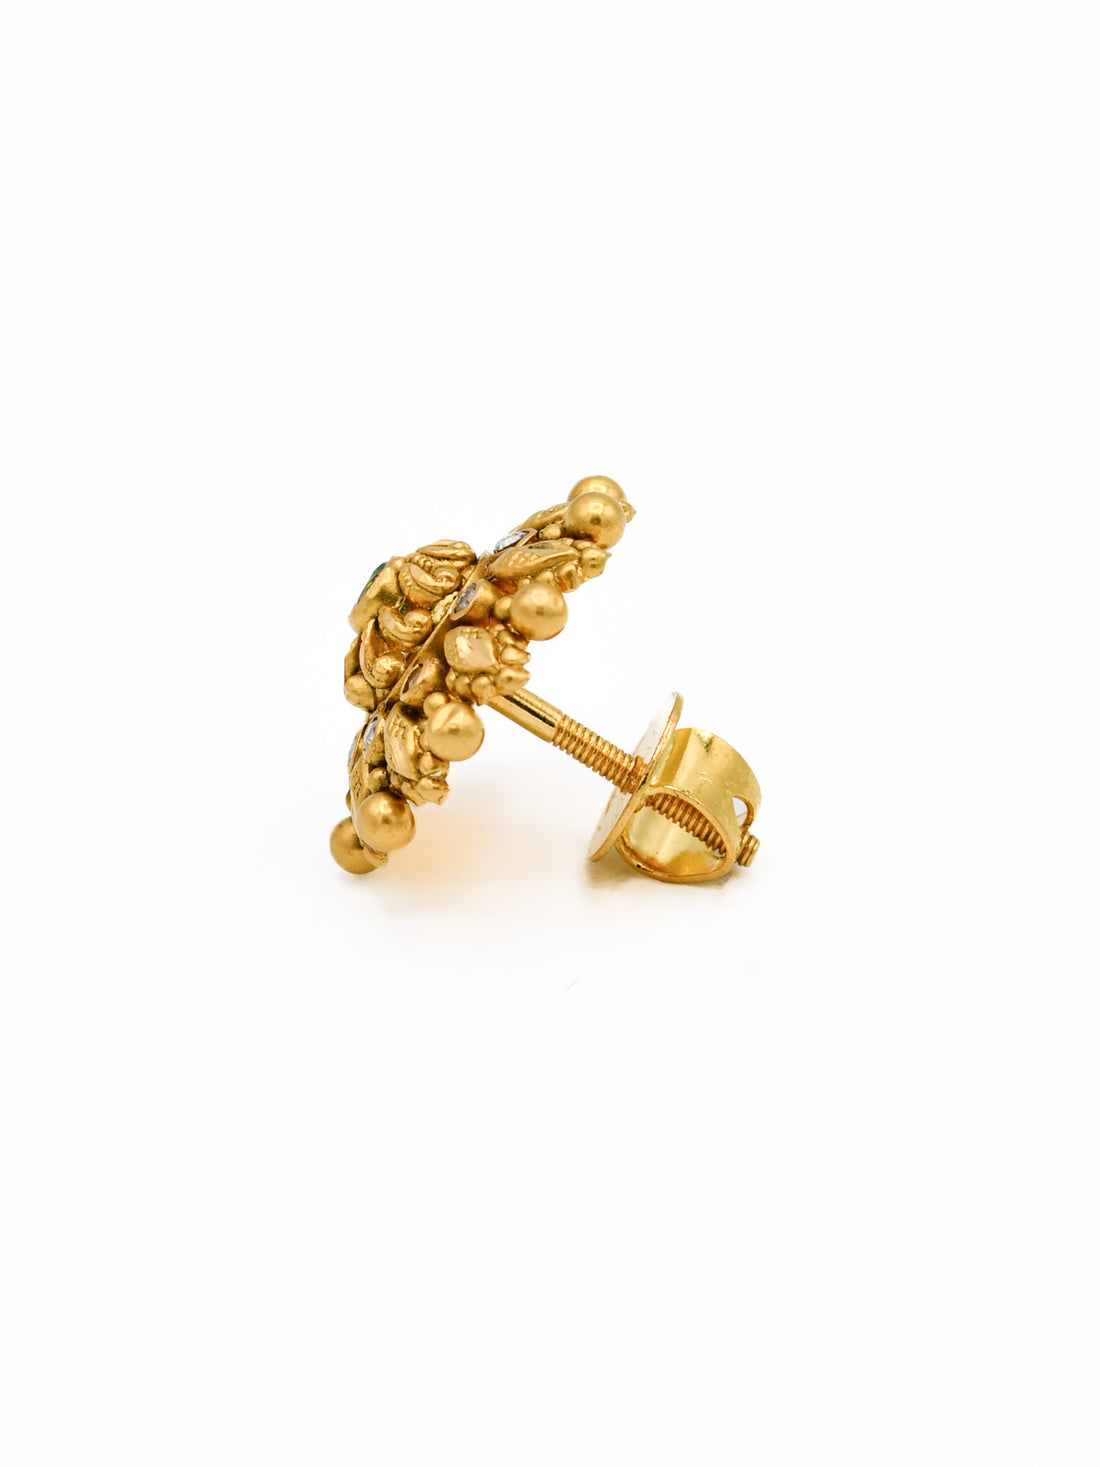 22ct Gold CZ Antique Stud Earrings - Roop Darshan